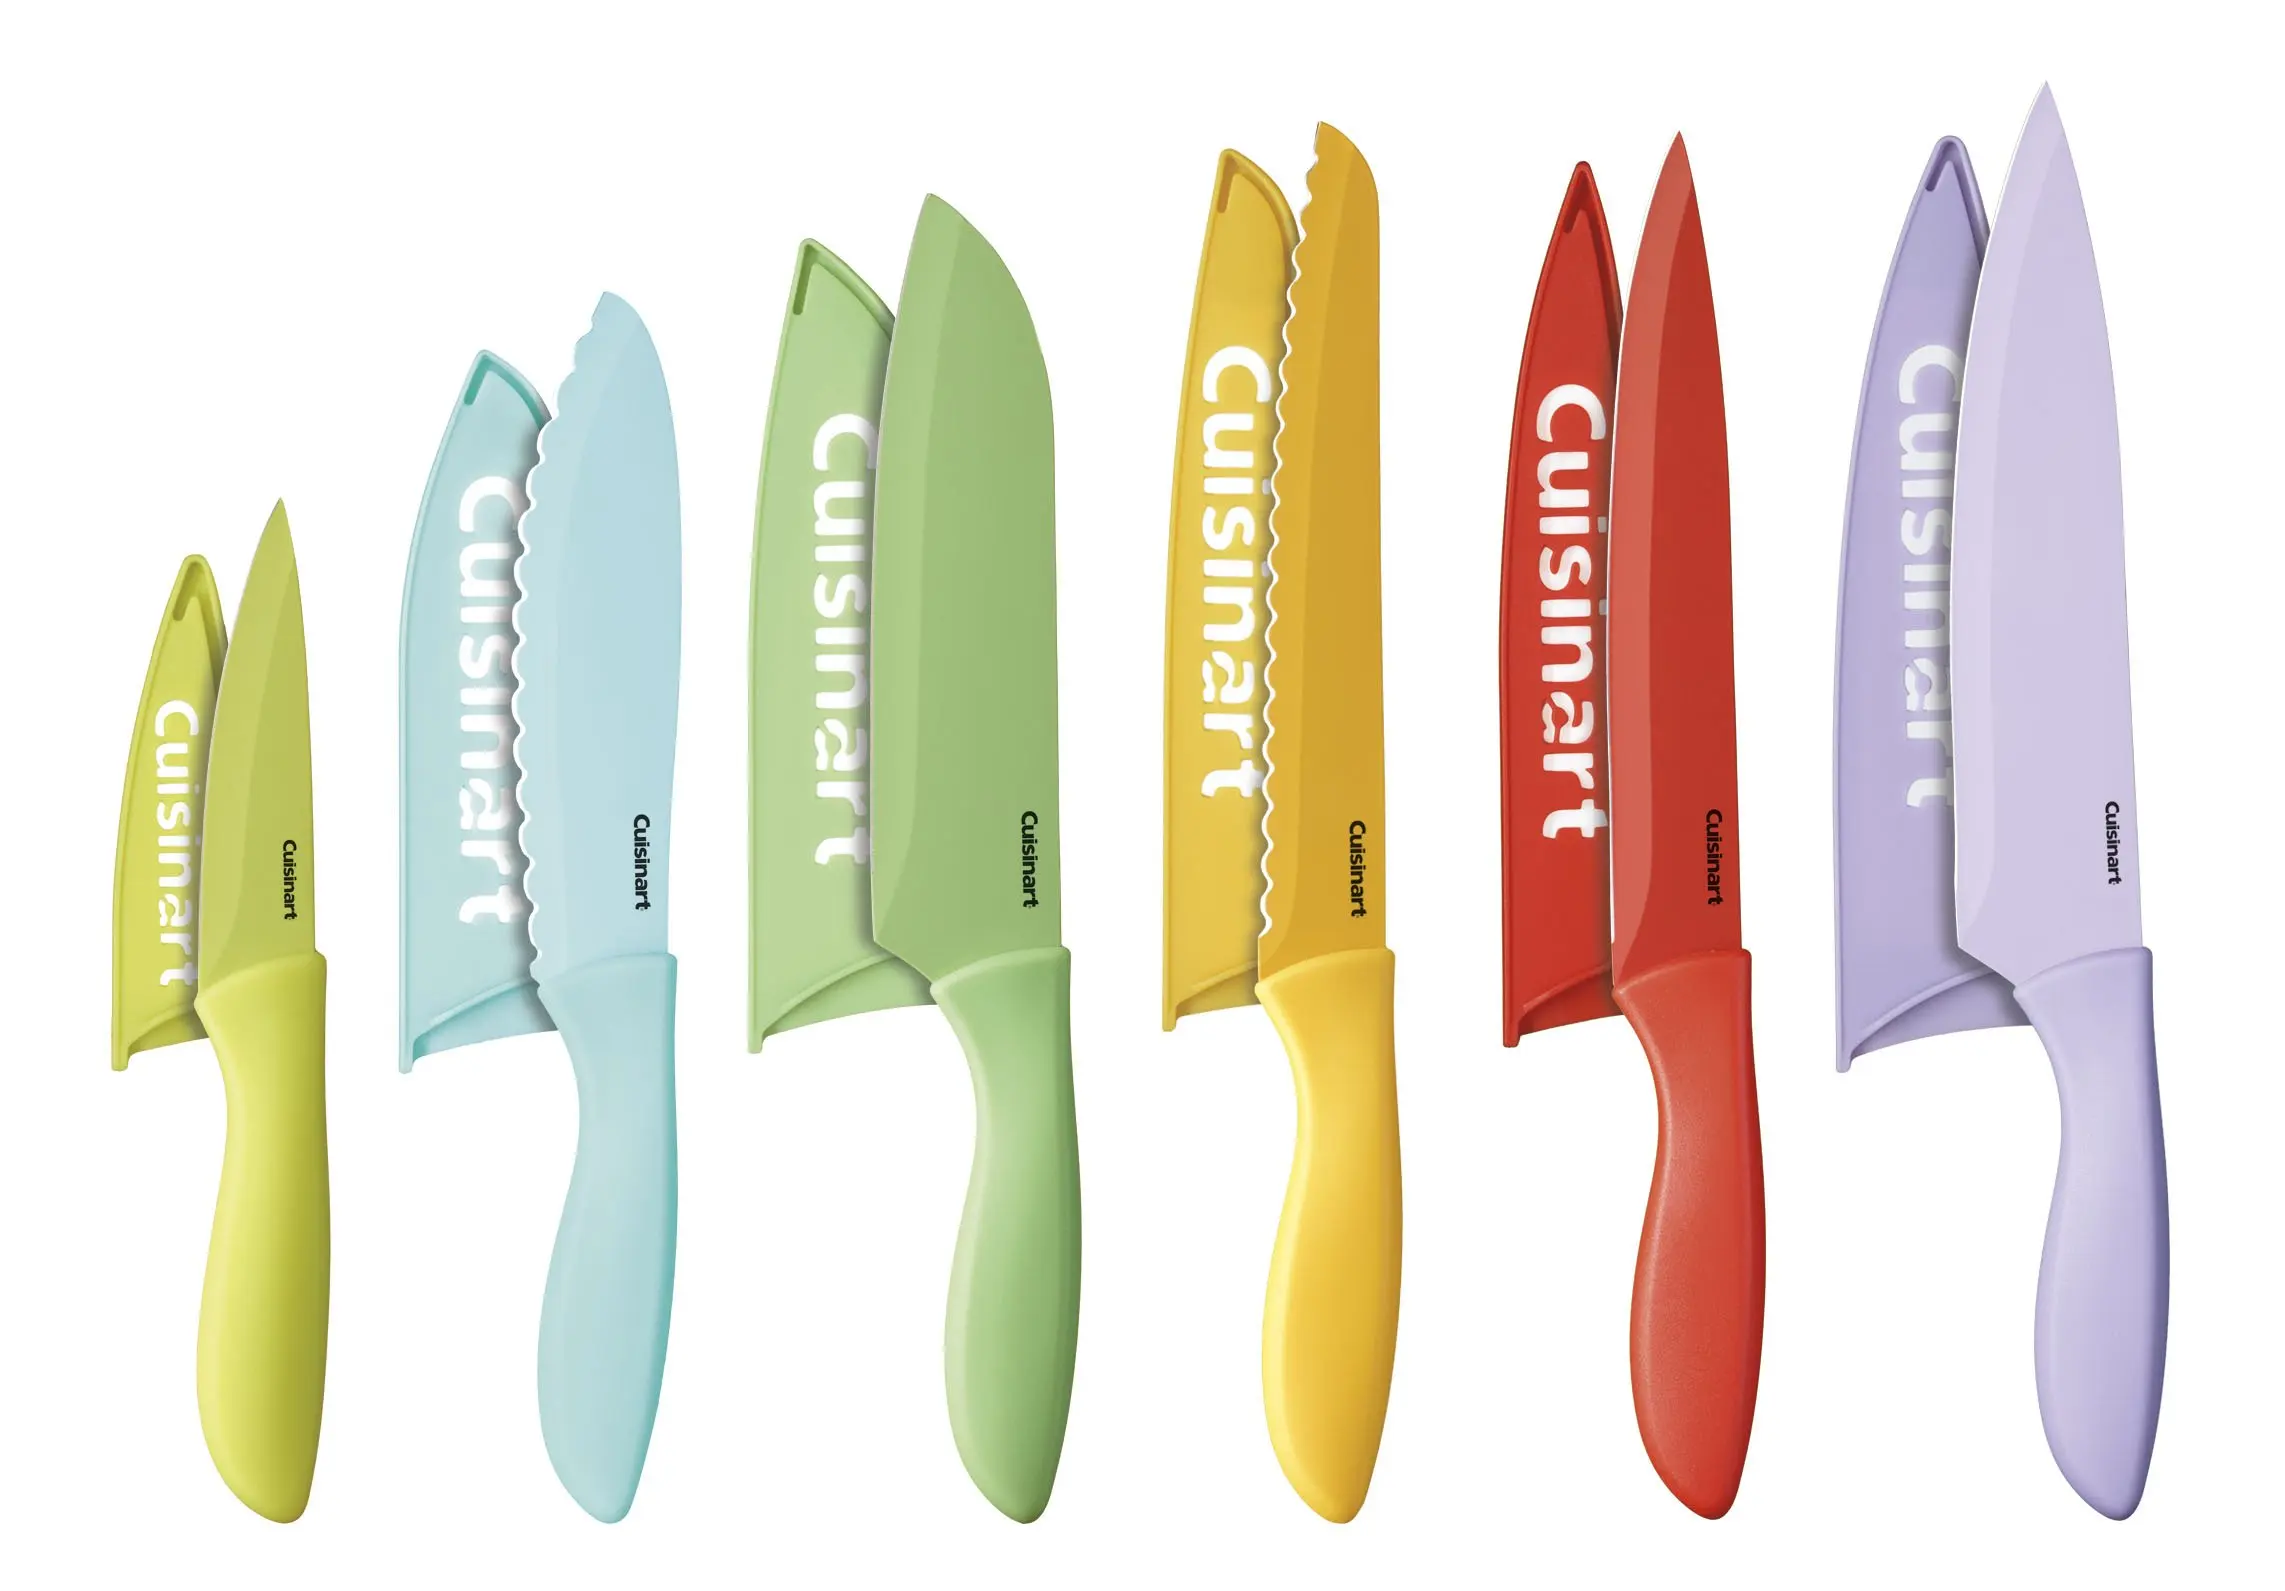 Керамические кухонные ножи купить. Ножи Cuisinart advantage. Набор ножей Cuisinart c55-12pcer1 advantage Color. Керамические ножи Cuisinart. Набор ножей Cuisinart.